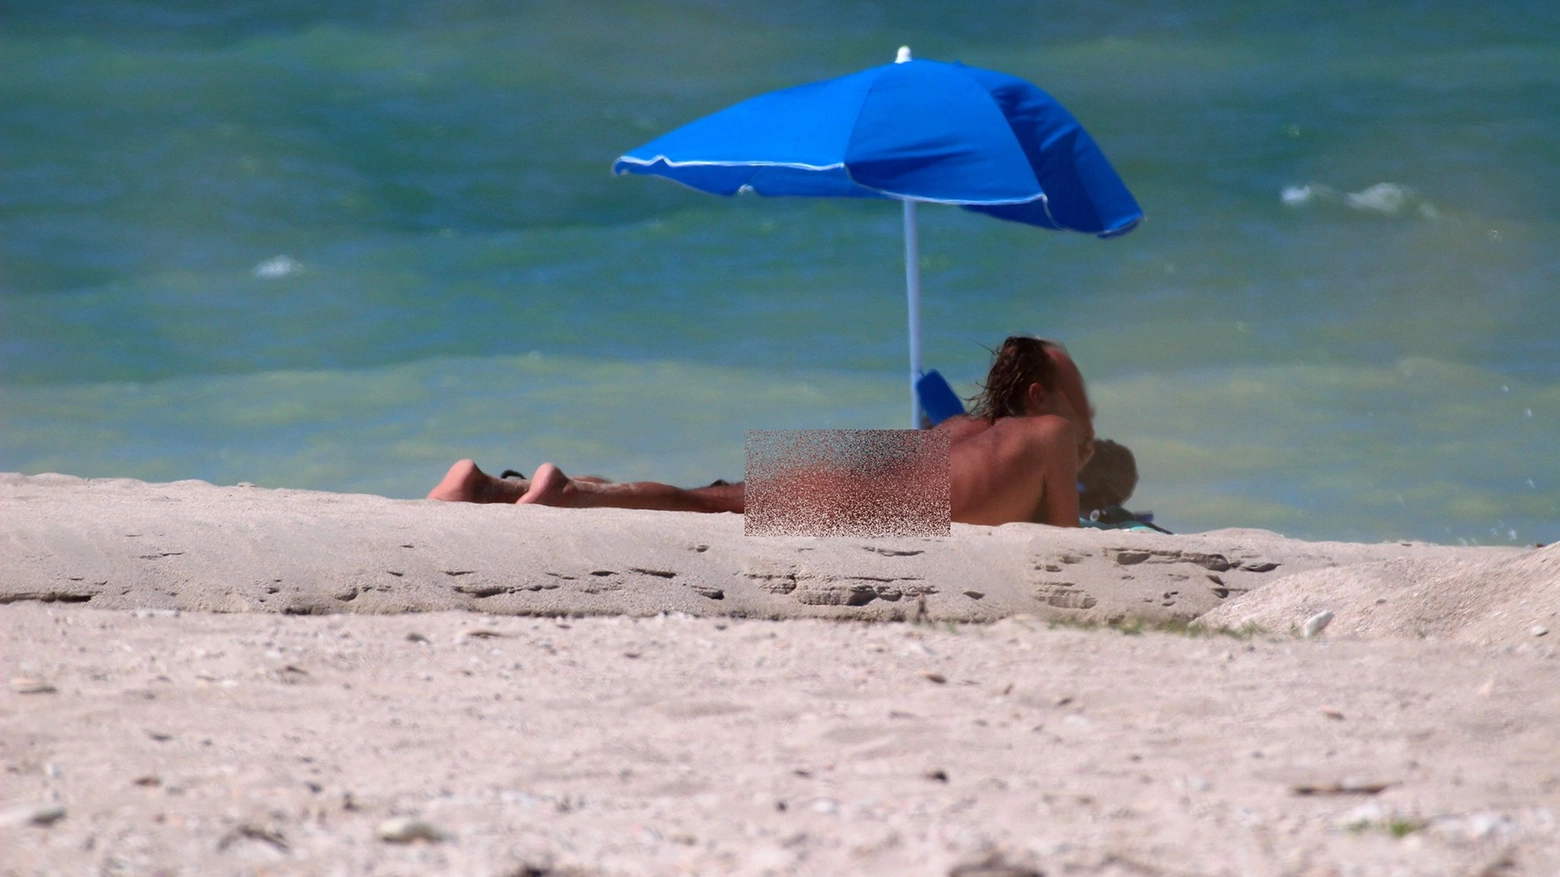 Uomo nudo in spiaggia in una foto d'archivio (Effimera)